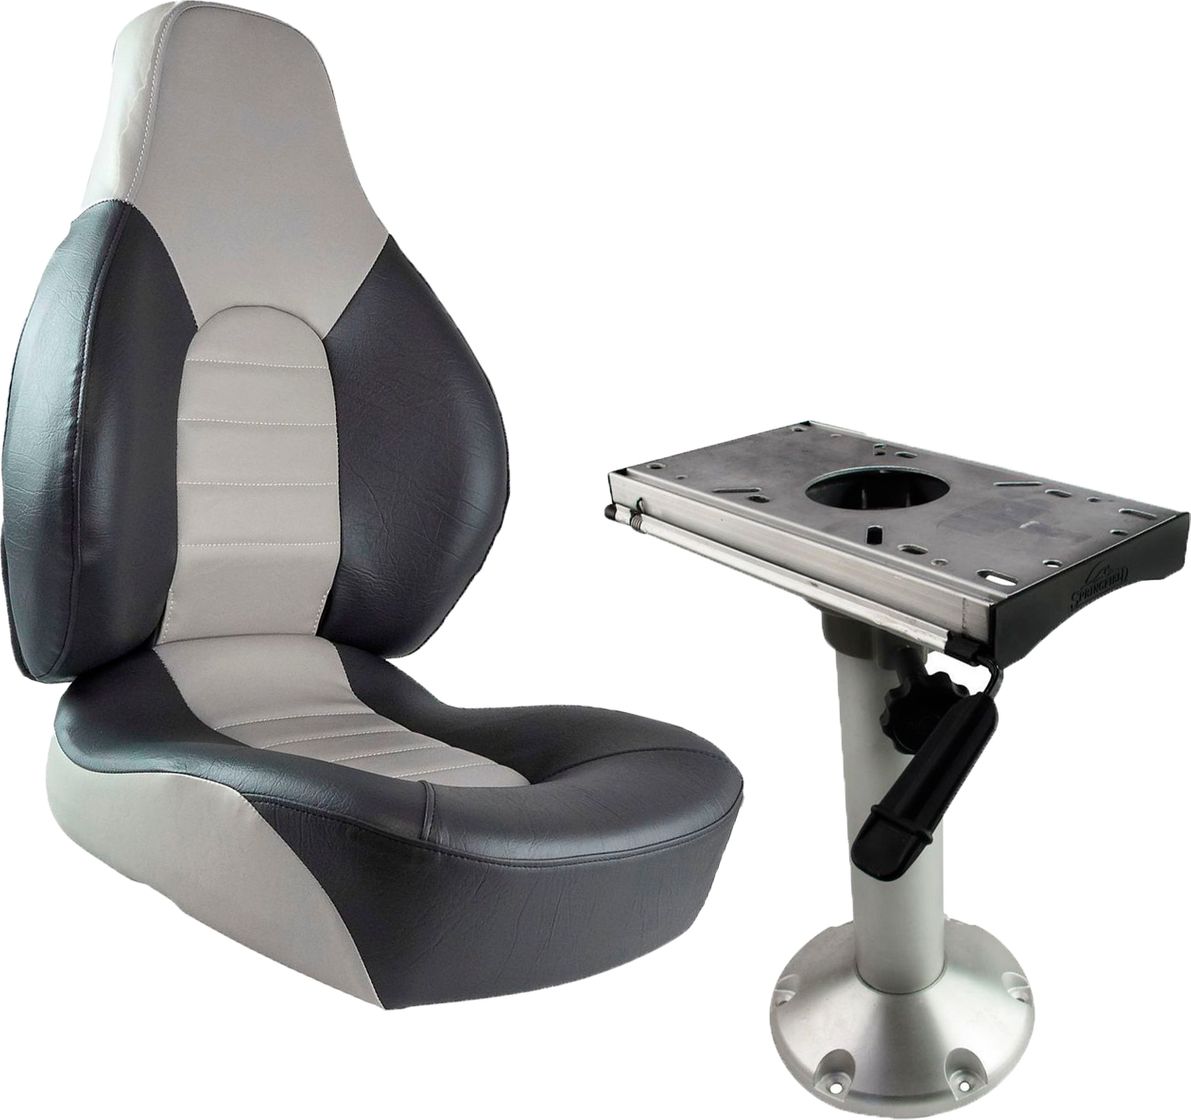 Кресло складное мягкое FISH PRO, серый/темно-серый на стойке с вращением и регулировкой вперед/назад 1041633_komp_1 кресло skipper premium с высокой спинкой серый темно серый 1061067